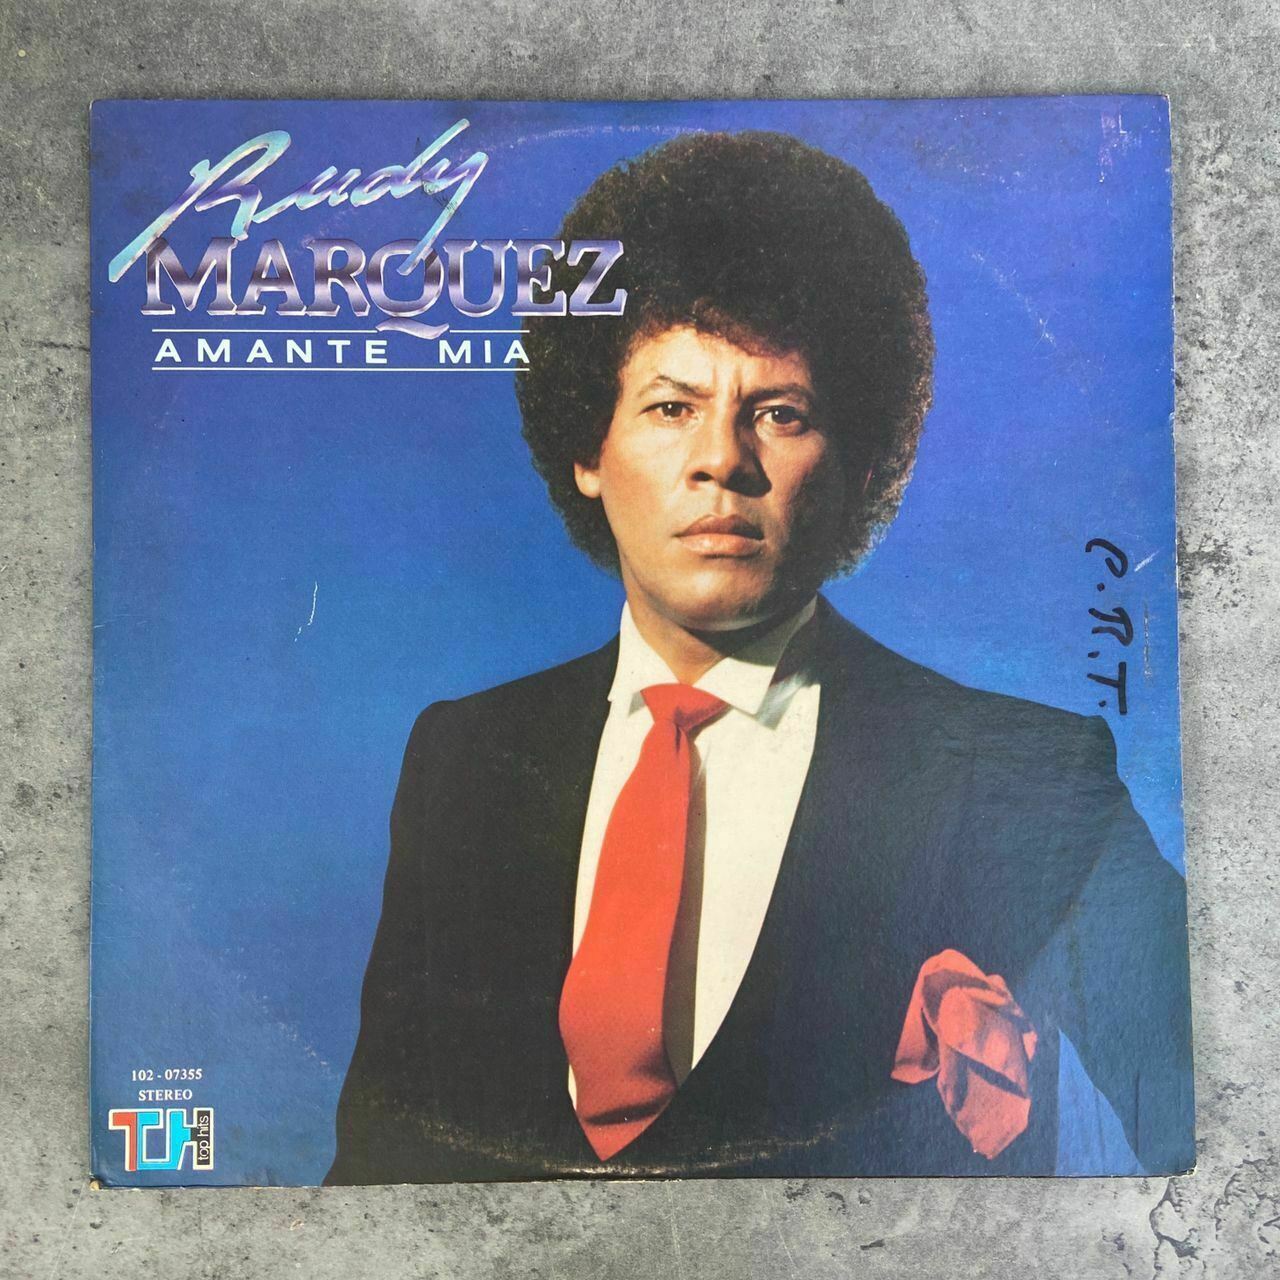 Rudy Marquez ‎- Amante Mia [1983] Vinyl LP Latin Pop Top Hits Que Quieres Tu